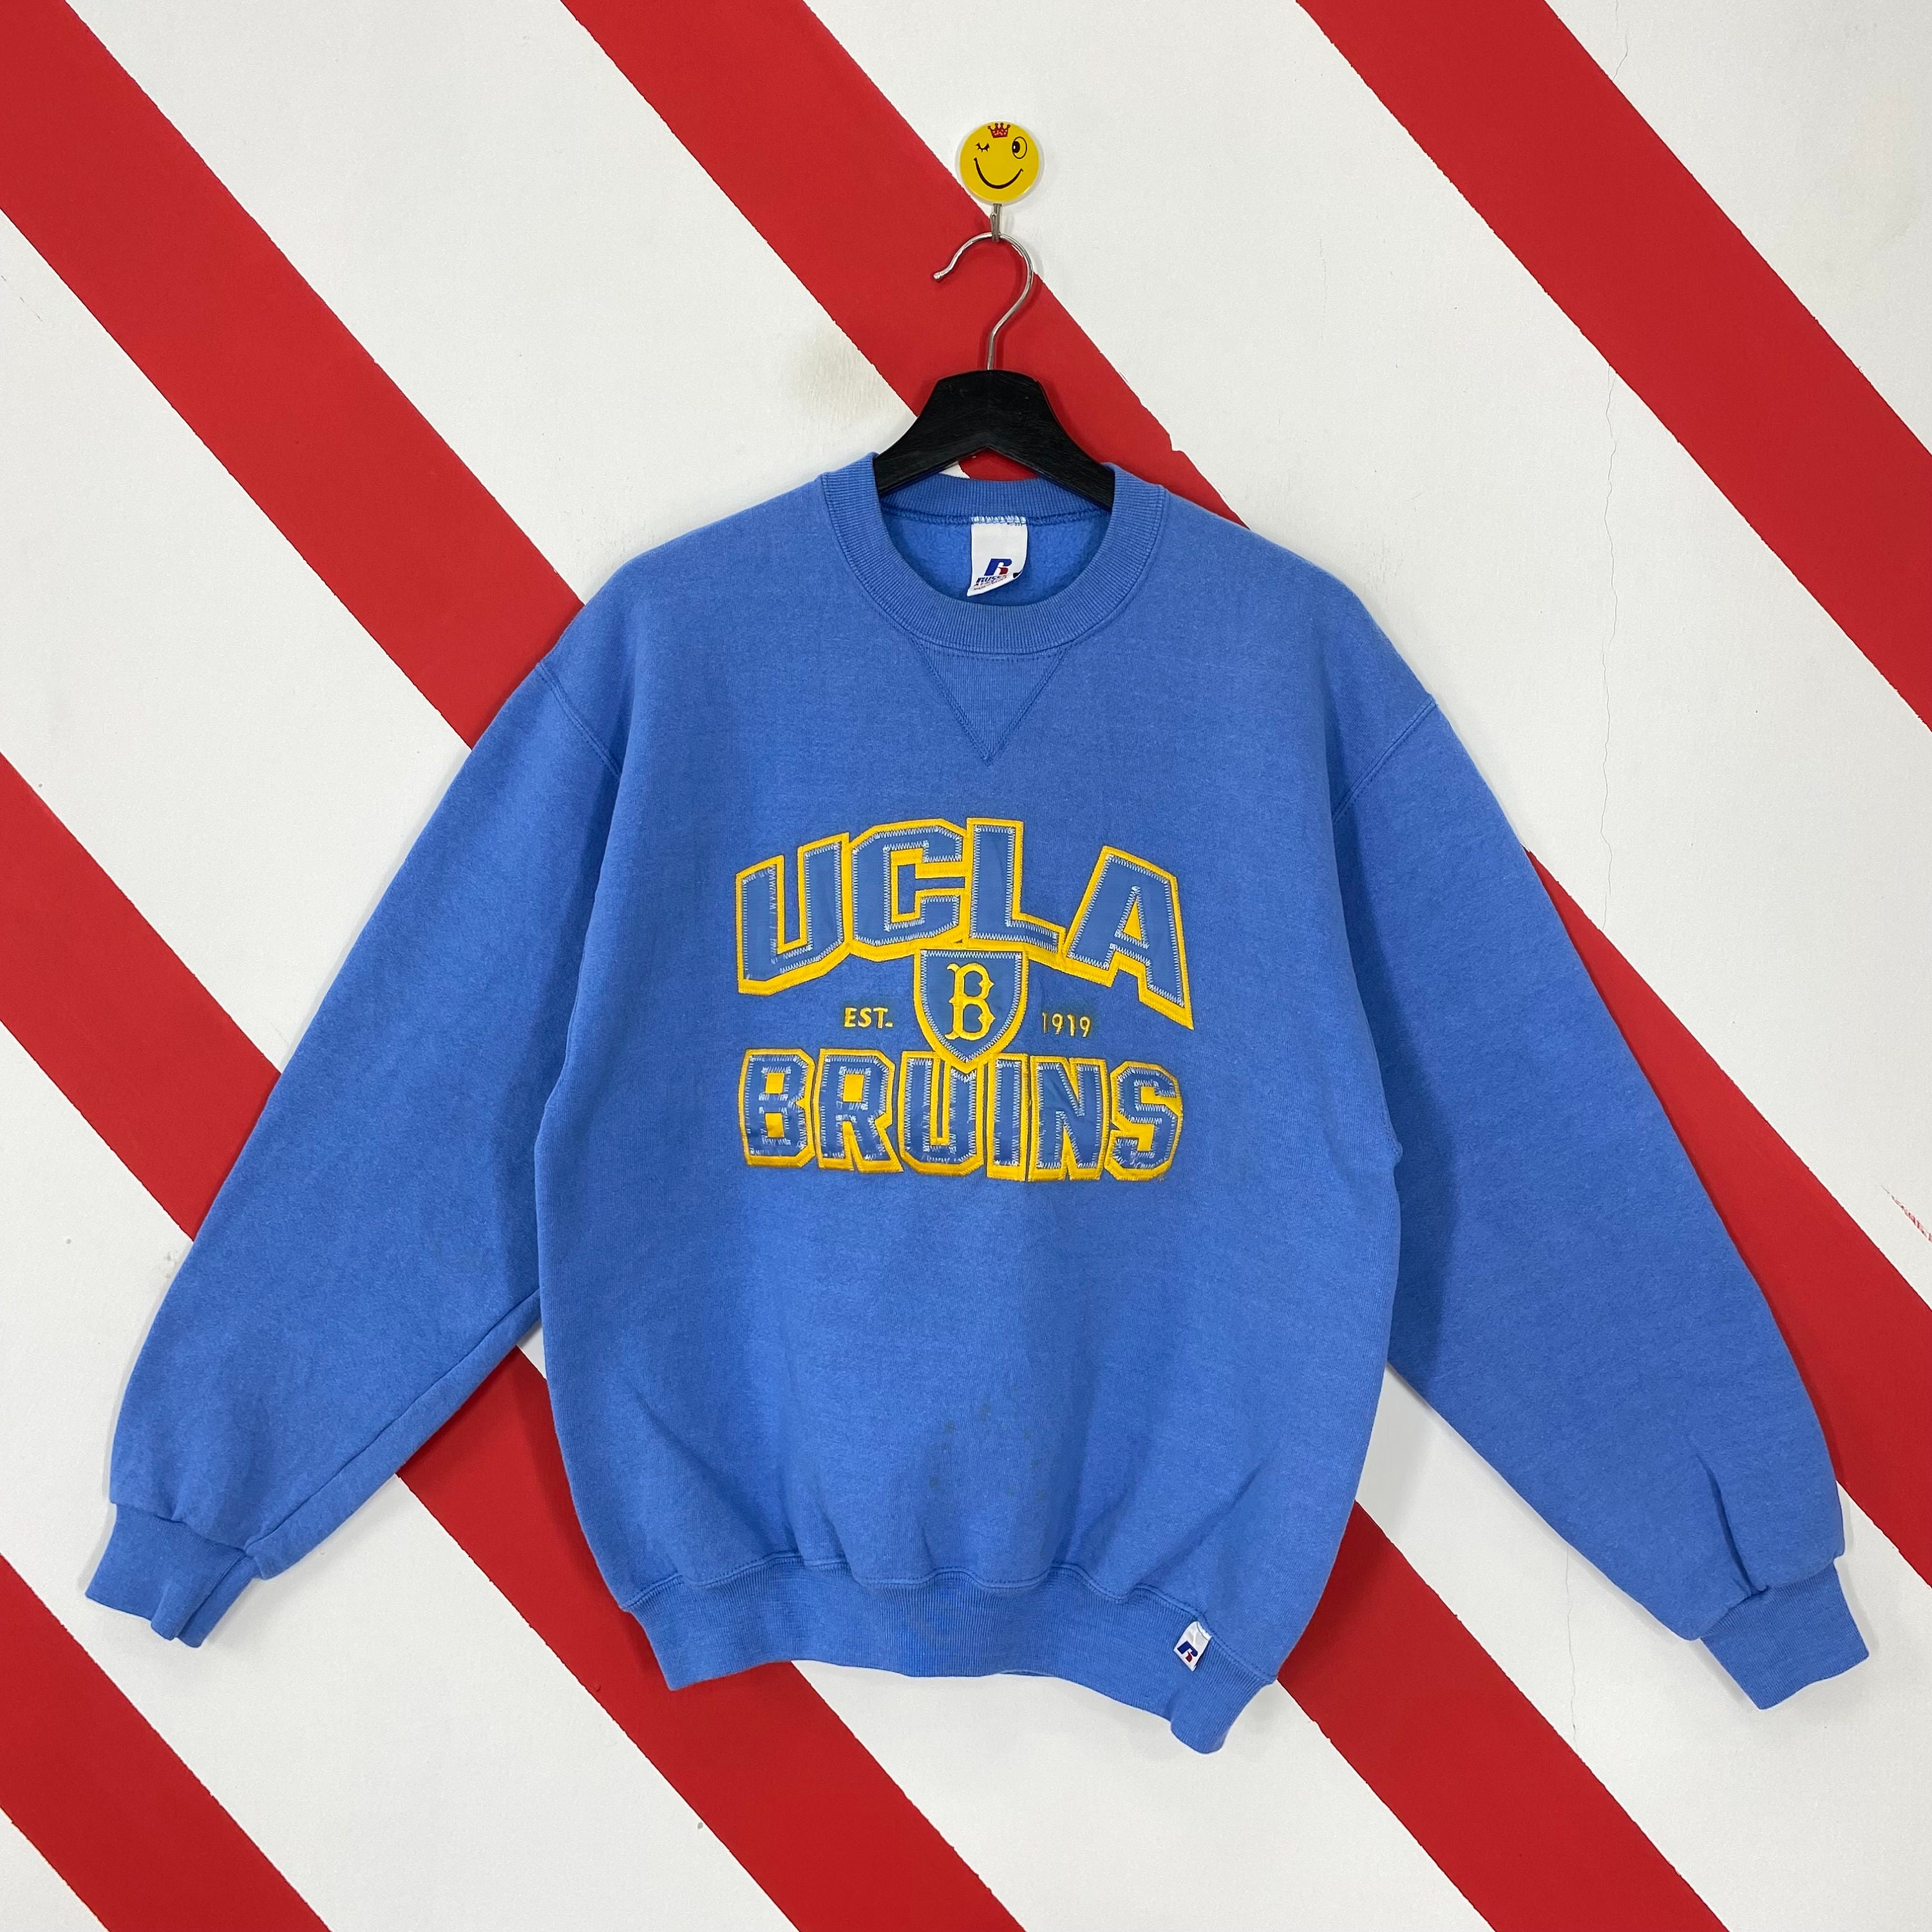 UCLA Bruins 1919 Vintage Sweatshirt